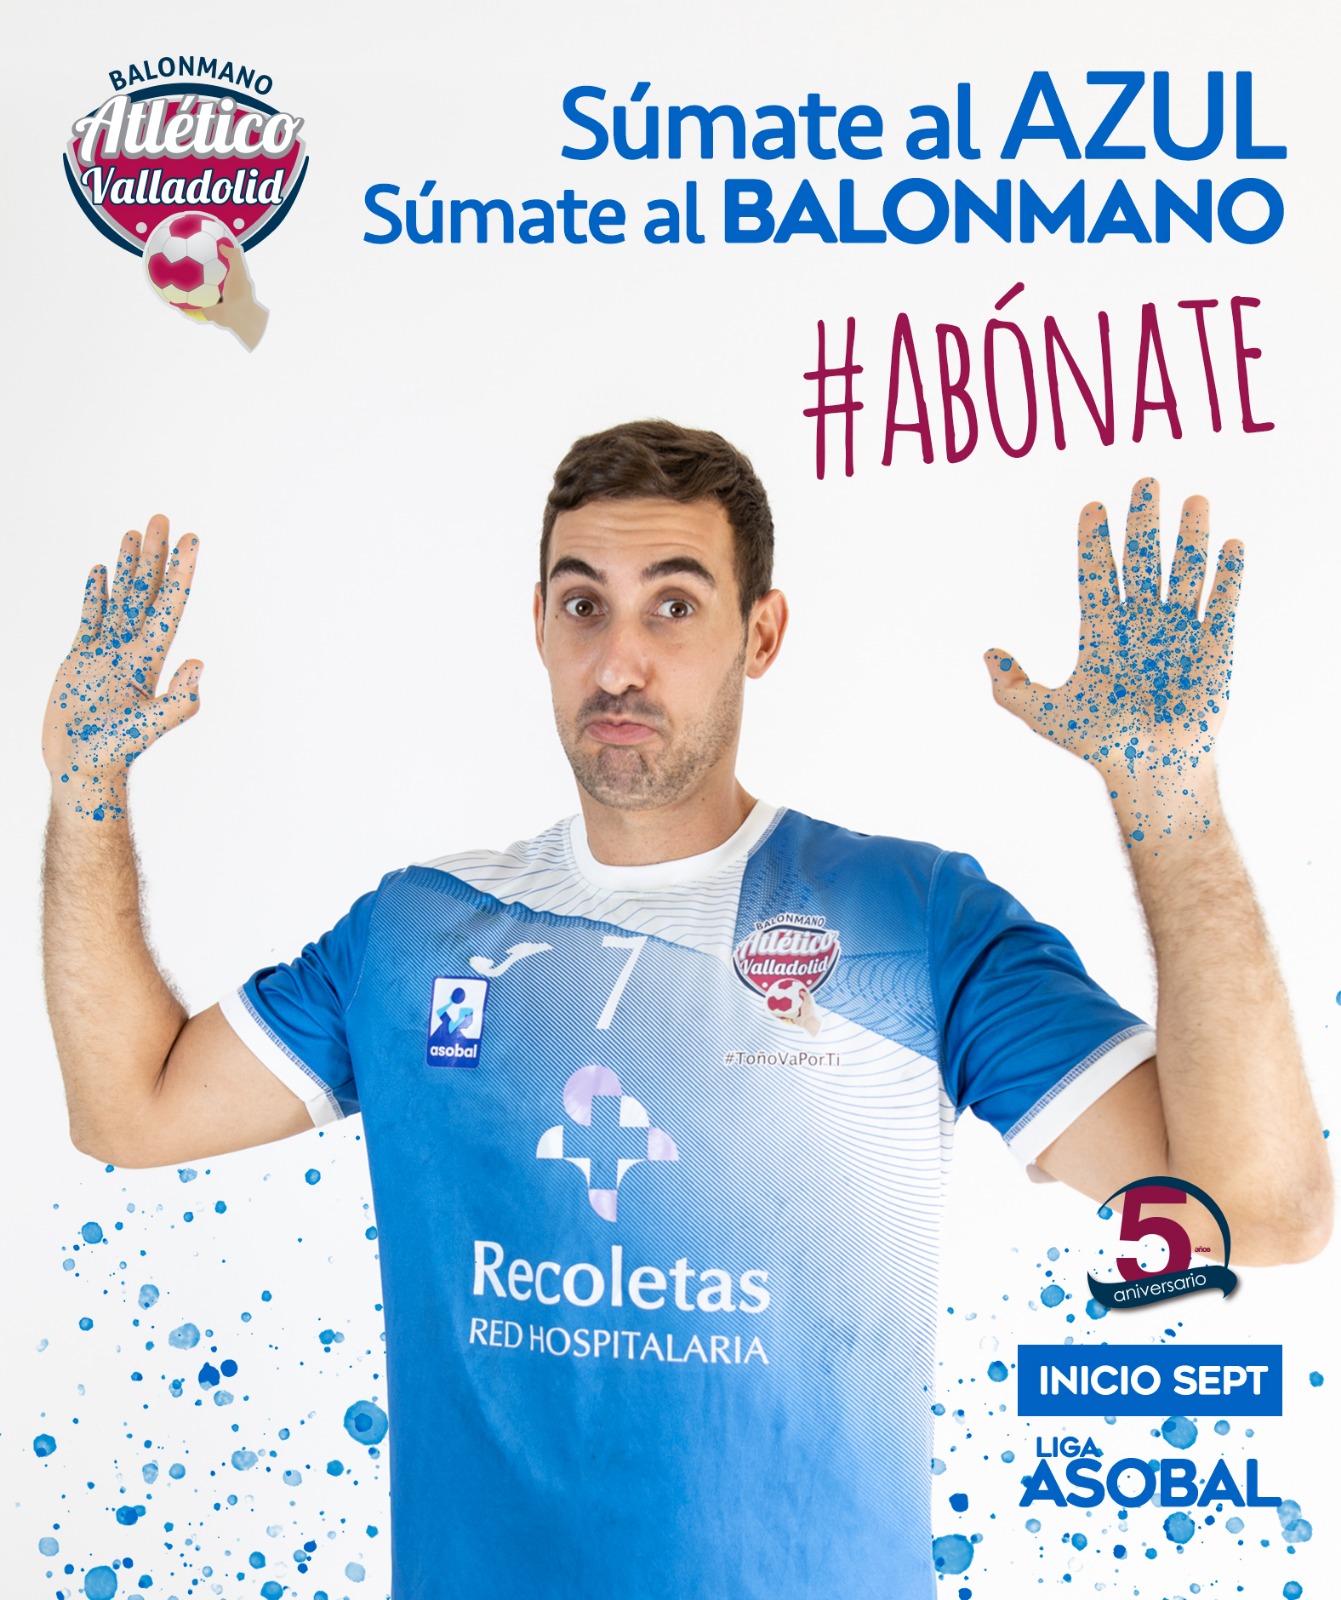 ¡Súmate al azul’, súmate al balonmano con el Recoletas Atlético Valladolid | Galería 3 / 28